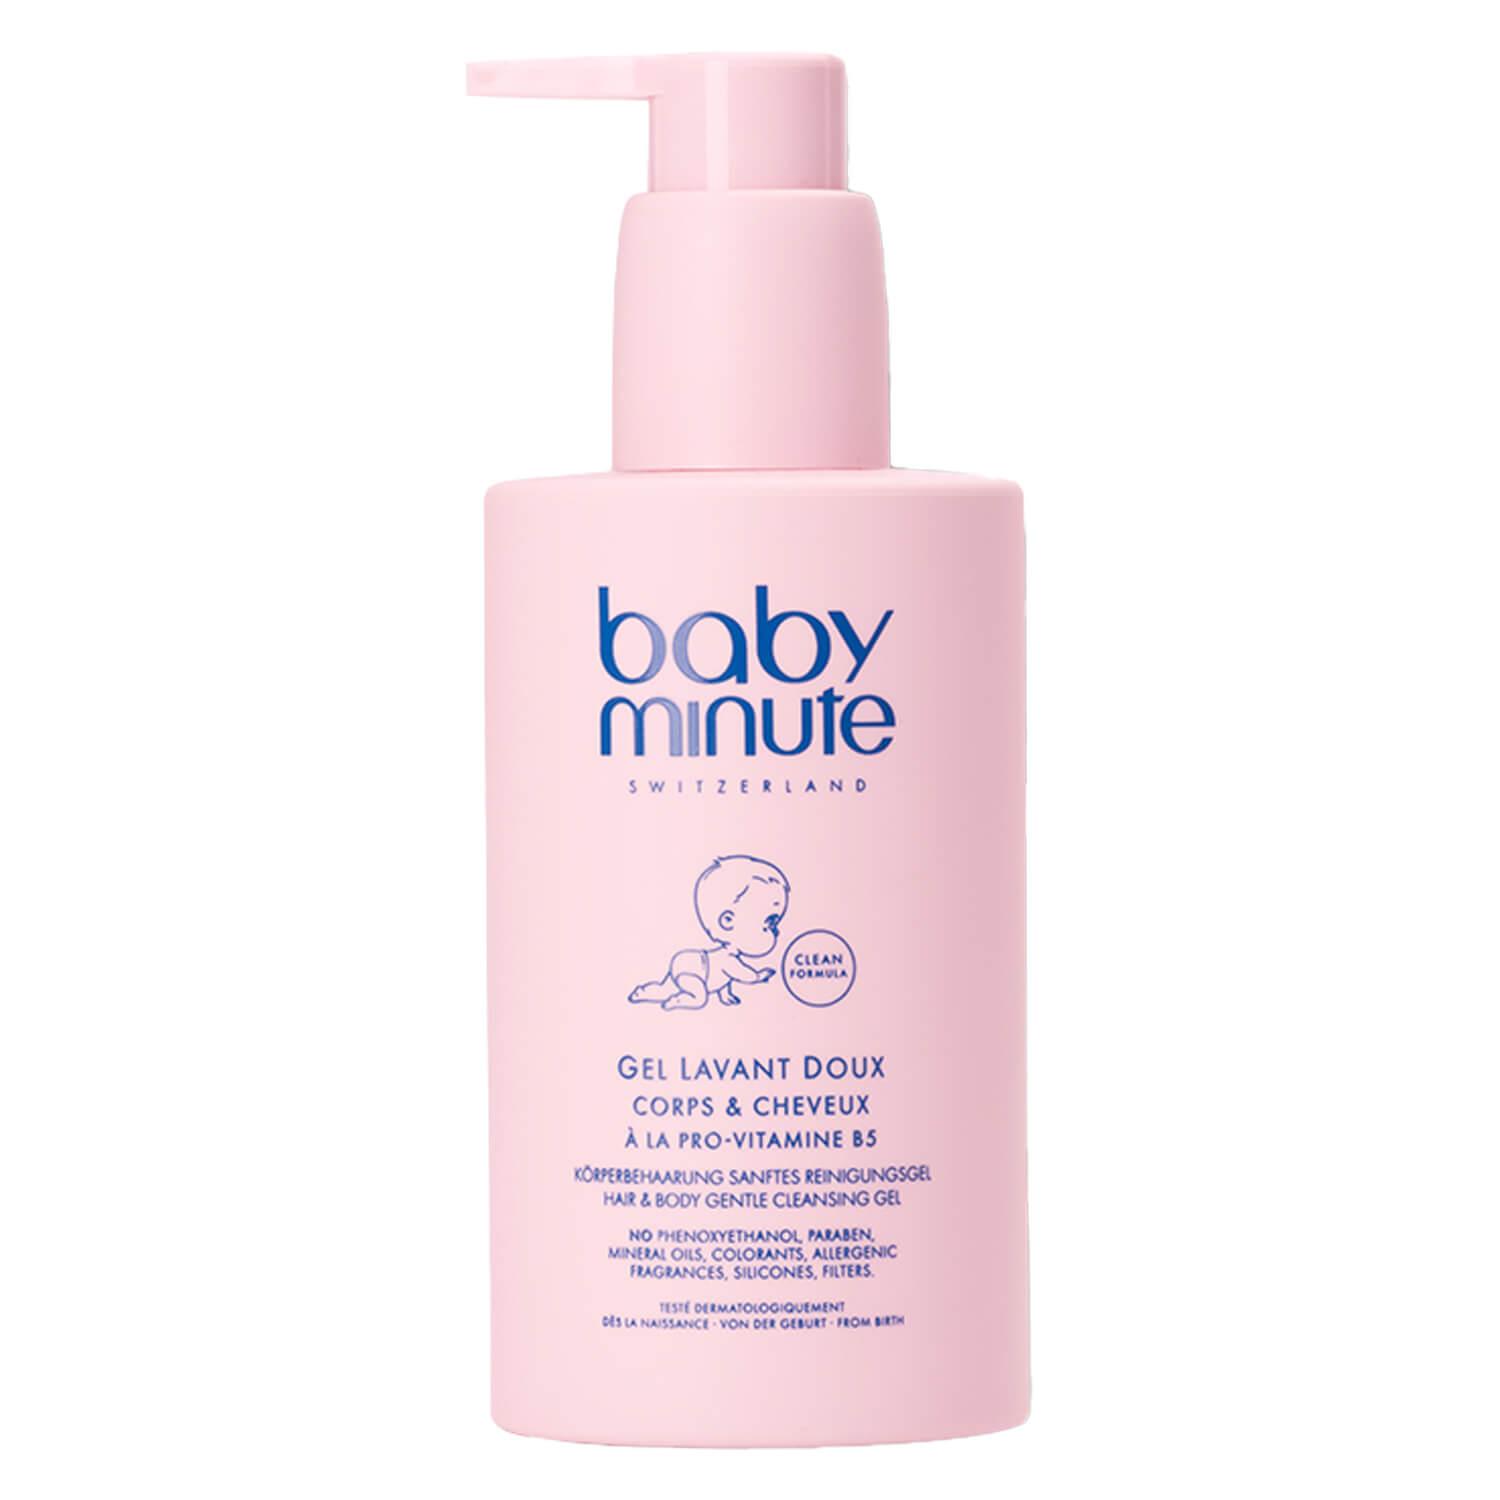 babyminute - Gel Lavante Doux Corps & Cheveux